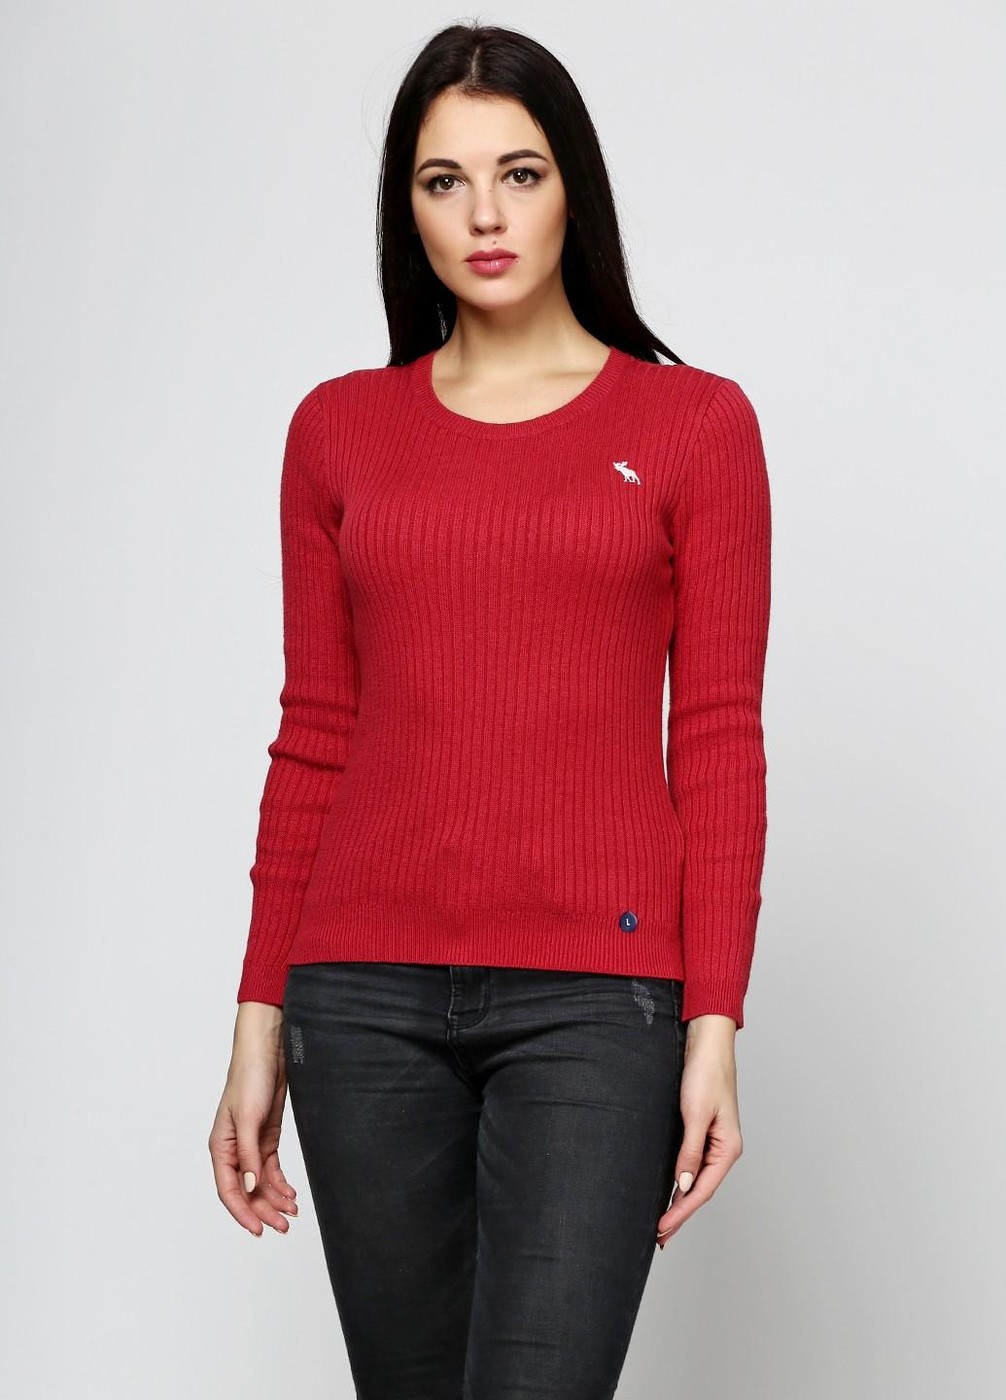 Свитер женский - свитер Abercrombie & Fitch, S (XS), S (XS)